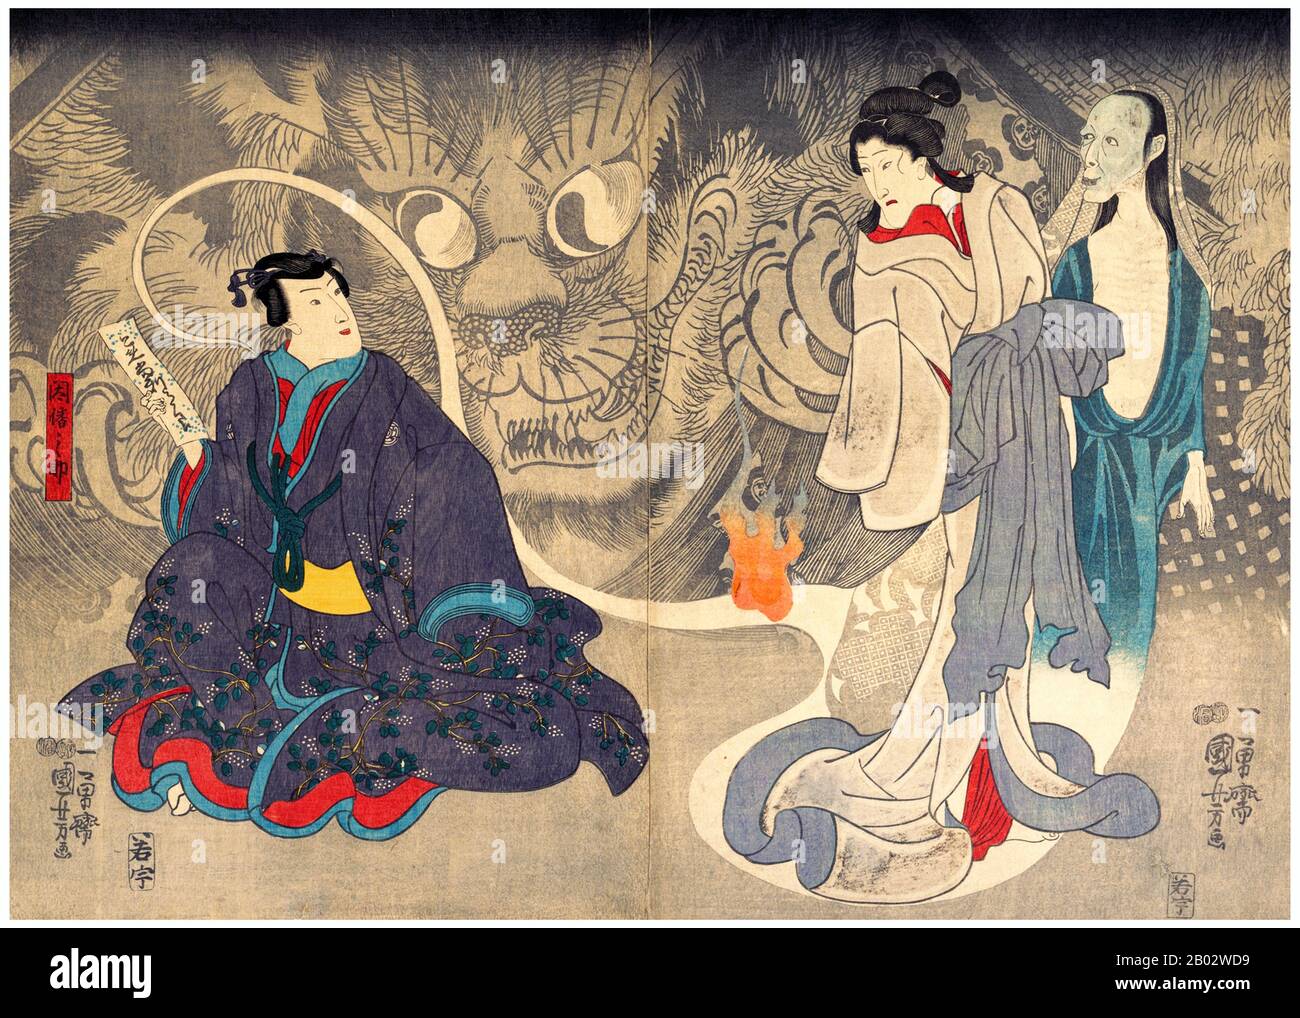 Utagawa Kuniyoshi (1 de enero de 1798 - 14 de abril de 1861) fue uno de los últimos grandes maestros del estilo ukiyo-e japonés de grabados y pintura en bloque de madera. Está asociado con la escuela de Utagawa. La gama de temas preferidos de Kuniyoshi incluía muchos géneros: Paisajes, hermosas mujeres, actores Kabuki, gatos y animales míticos. Es conocido por las representaciones de las batallas de samurai y héroes legendarios. Su obra de arte fue afectada por influencias occidentales en la pintura del paisaje y la caricatura. Foto de stock